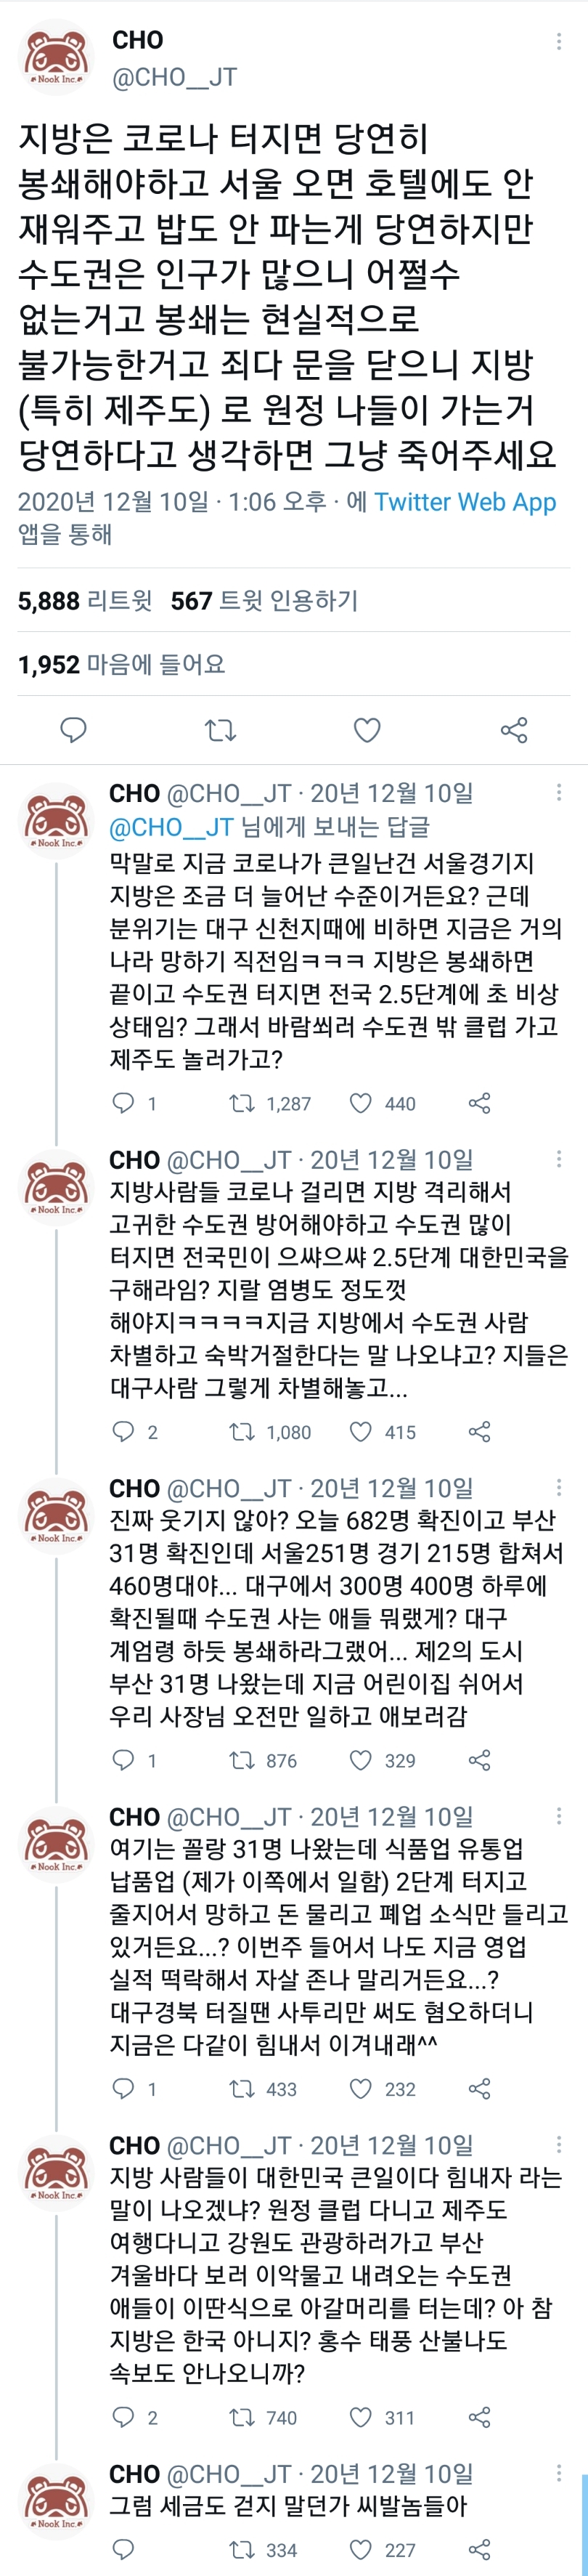 이 시국 연전연승 트윗....feat.서울공화국